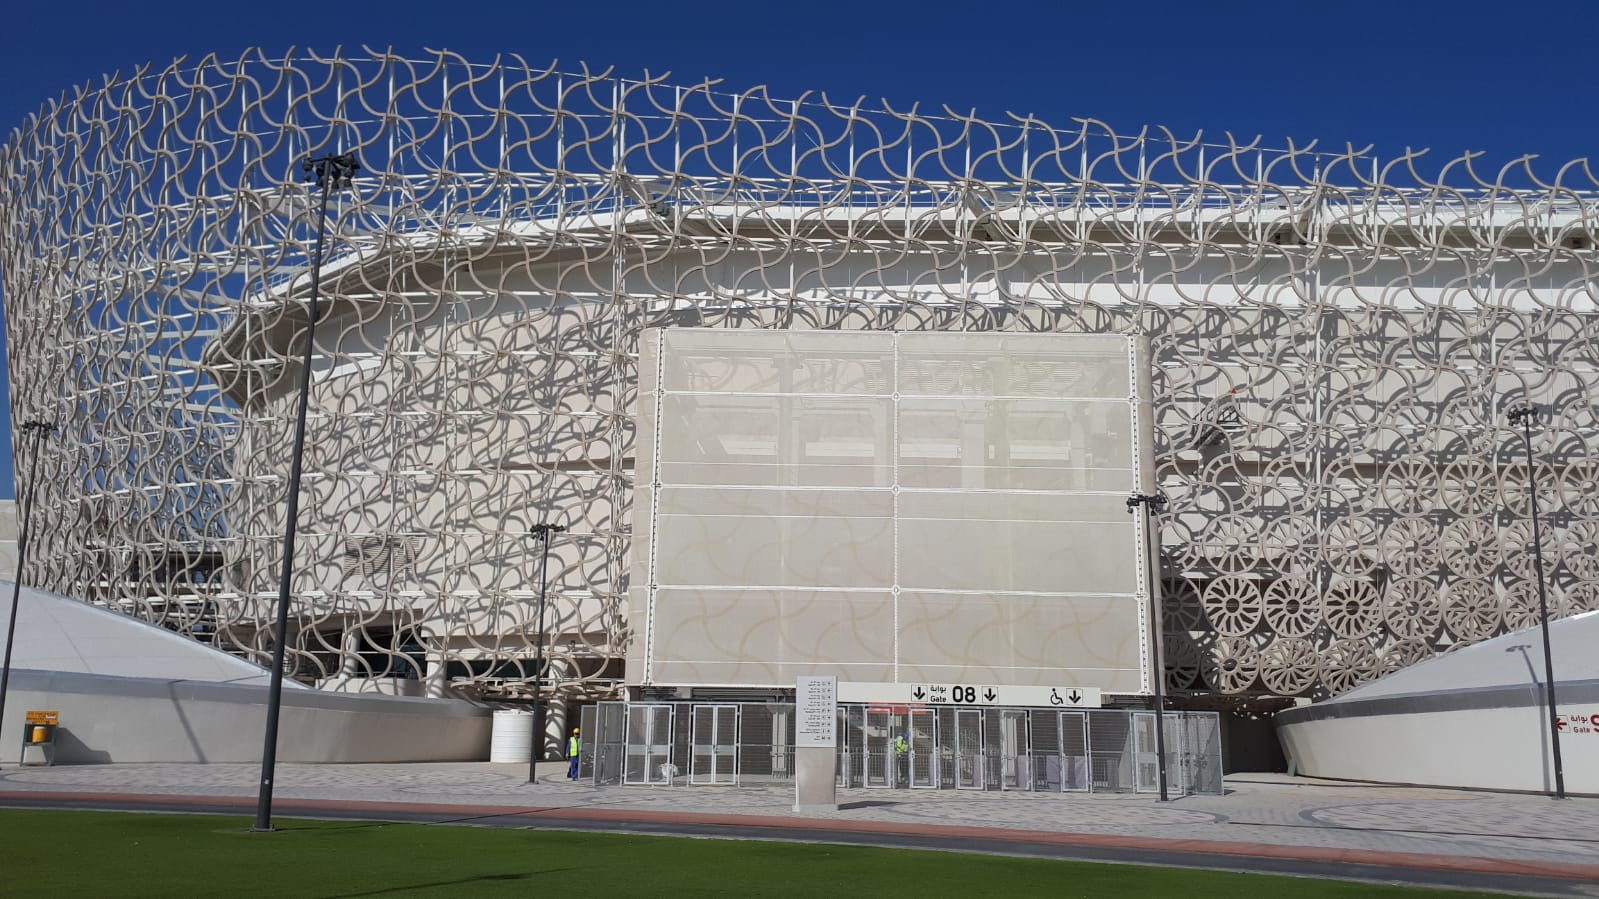 Detalhes da fachada do tradicional Estádio Al-Rayyan, no Catar